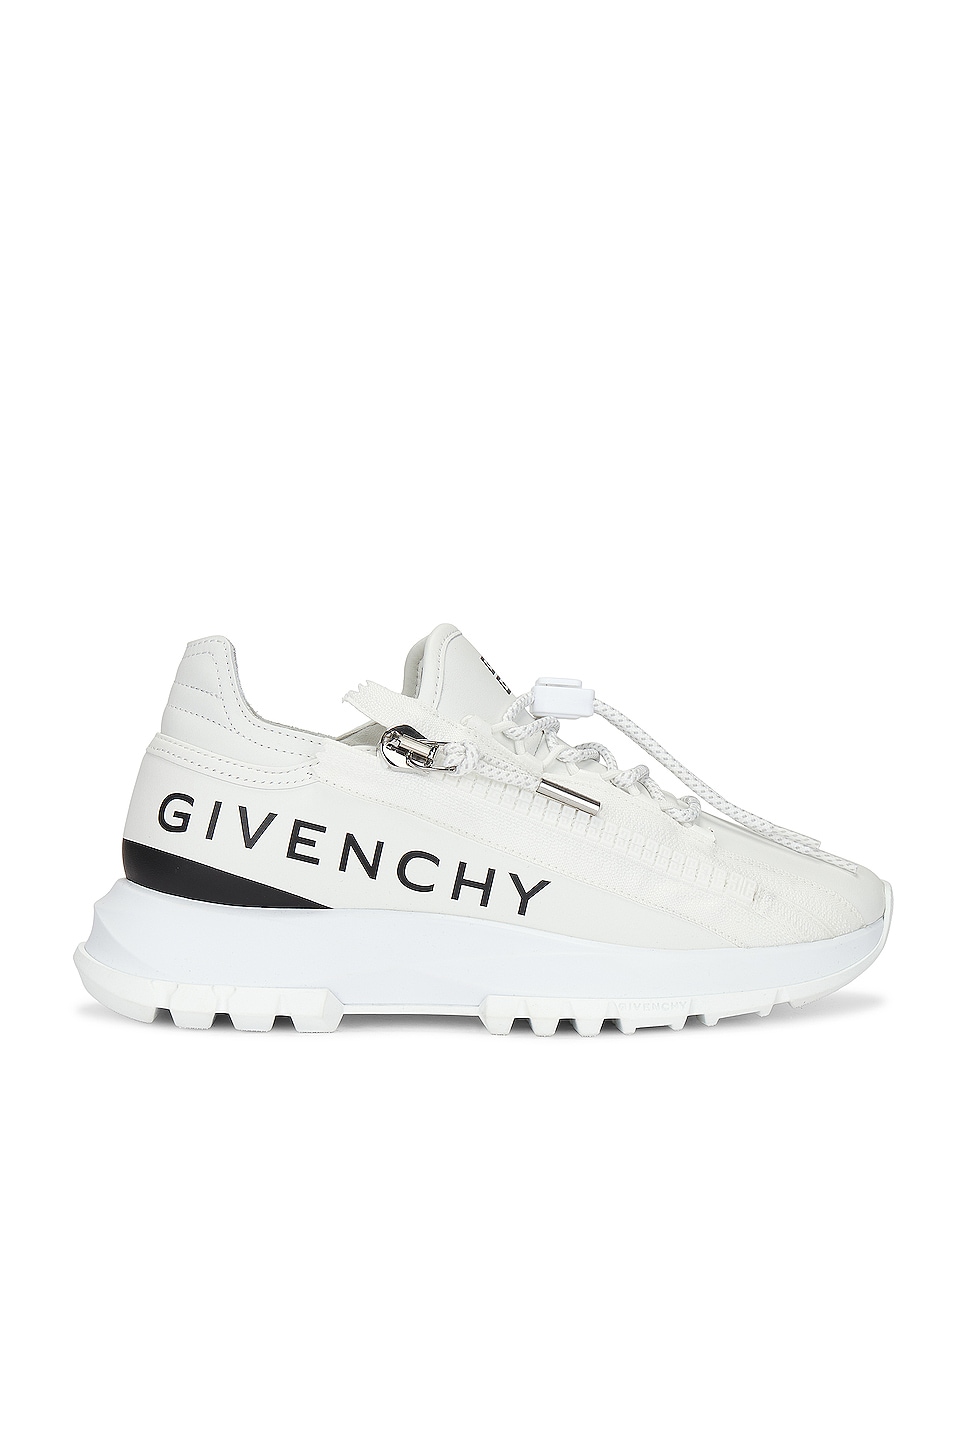 Givenchy Spectre Zip Runner Sneaker in White & Black | FWRD